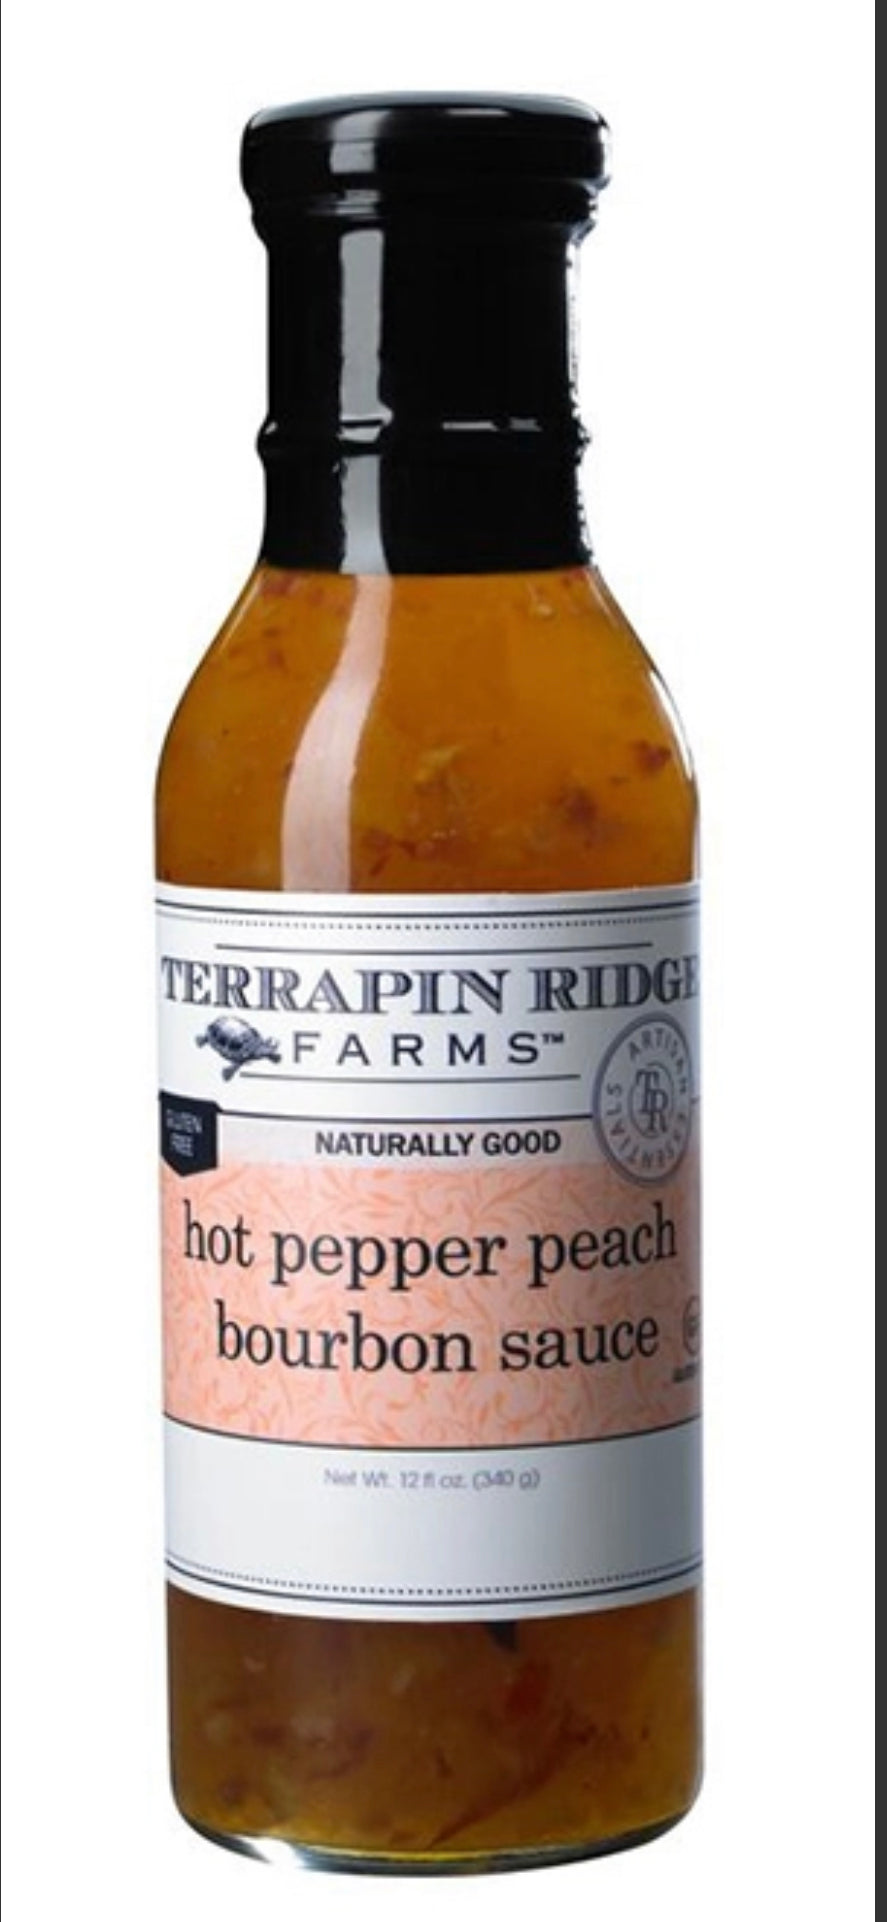 Hot Pepper Peach Bourbon Sauce